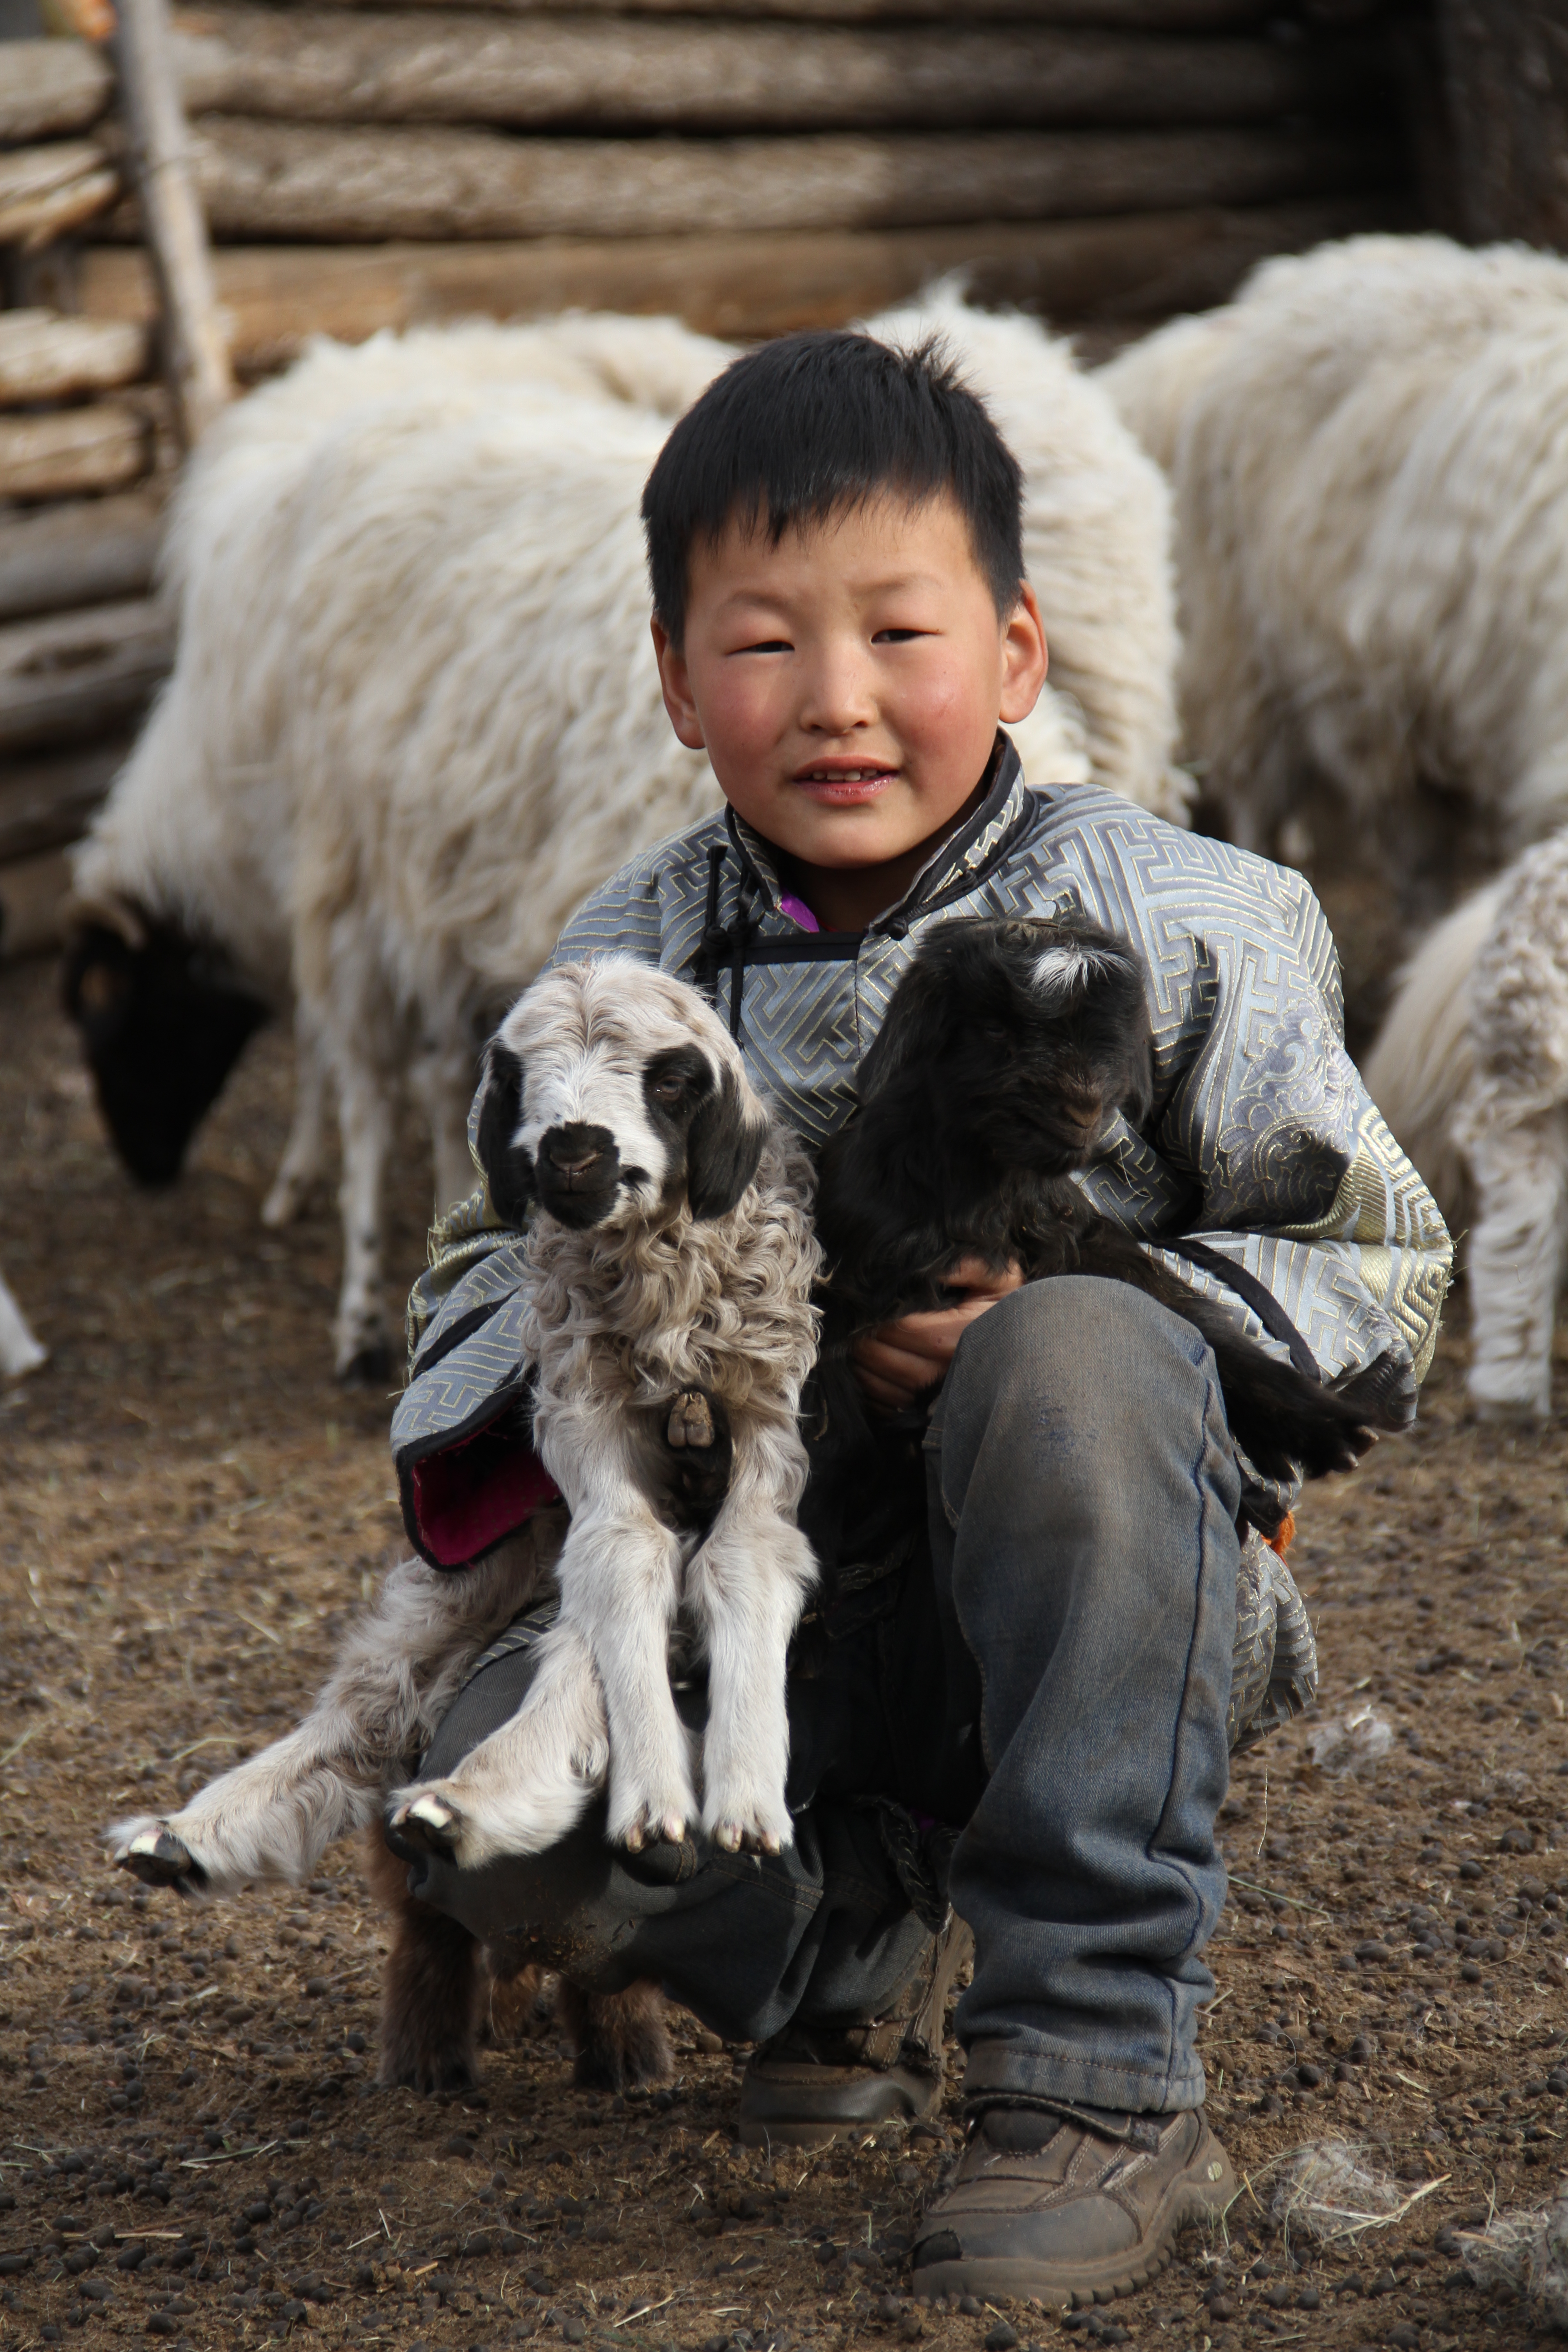 Garçonnet accroupi tenant dans ses bras un agneau noir et un agneau blanc.